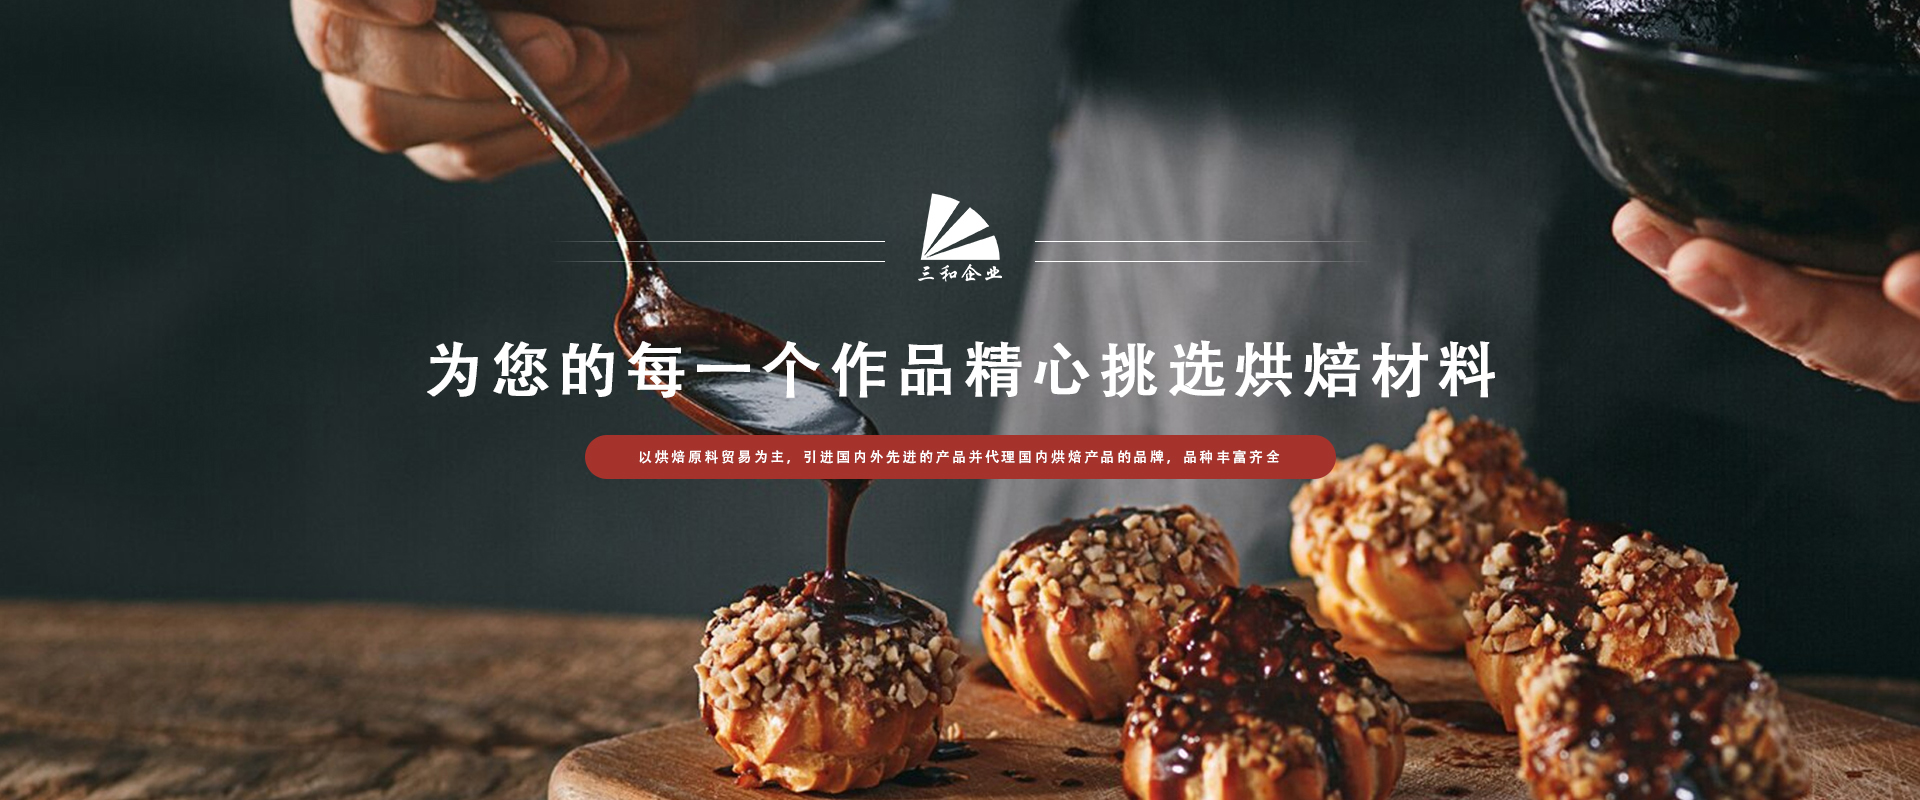 东莞市九游会官网真人游戏第一品牌食品贸易有限公司 